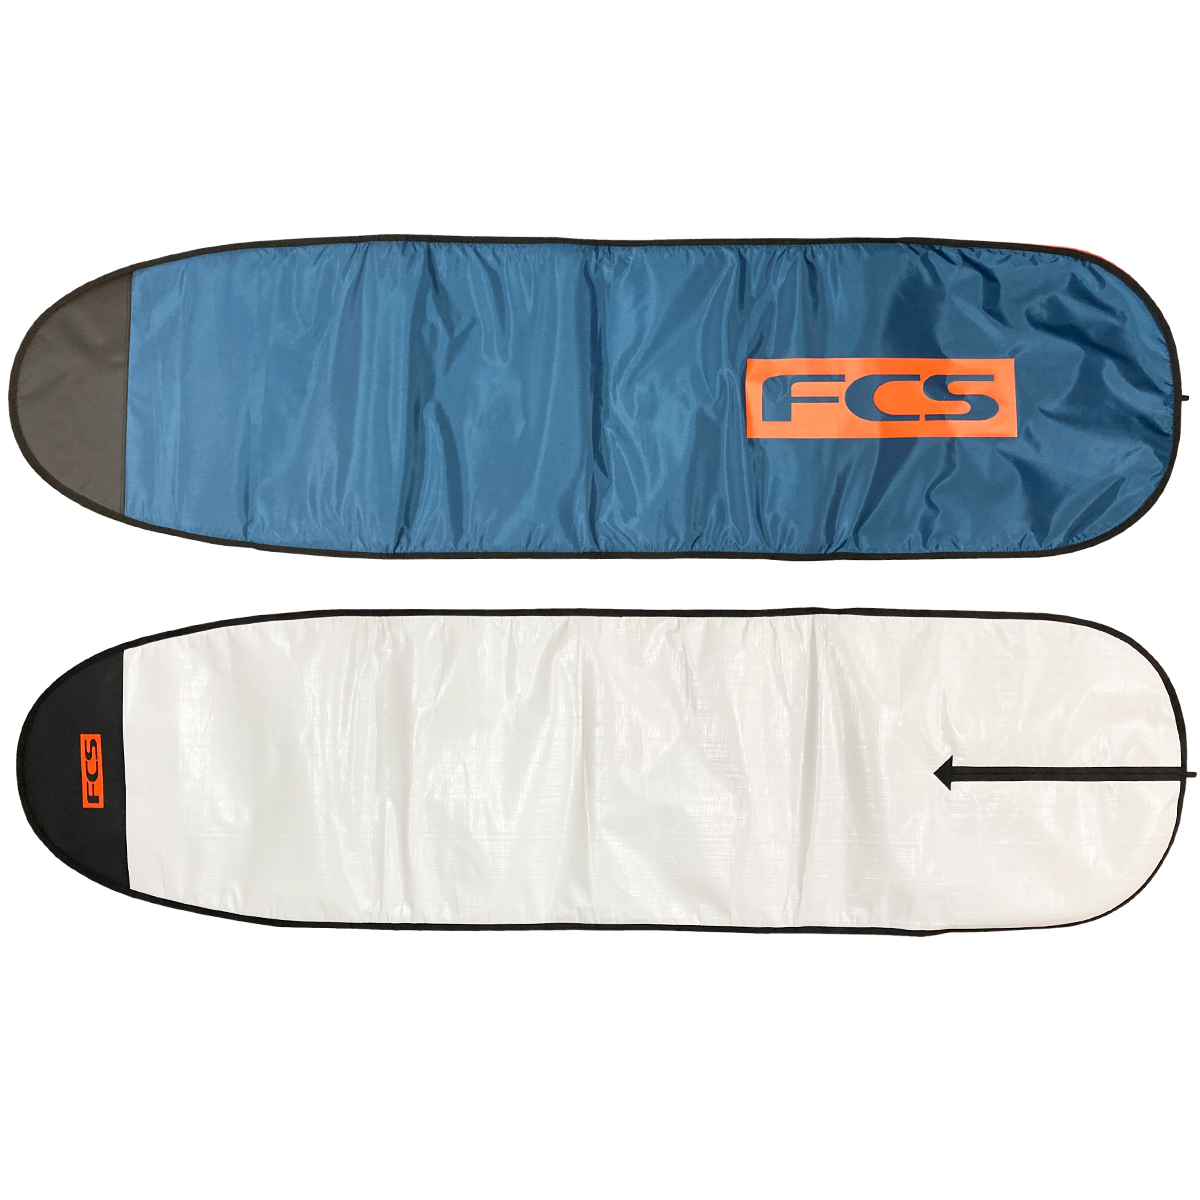 サーフボードケース ファンボード 8#039;0quot; FCS エフシーエス CLASSIC Fun Board クラシック ハードケース  レトロボード ミッドレングス サーフィン | USED SURF×SURF MARKET